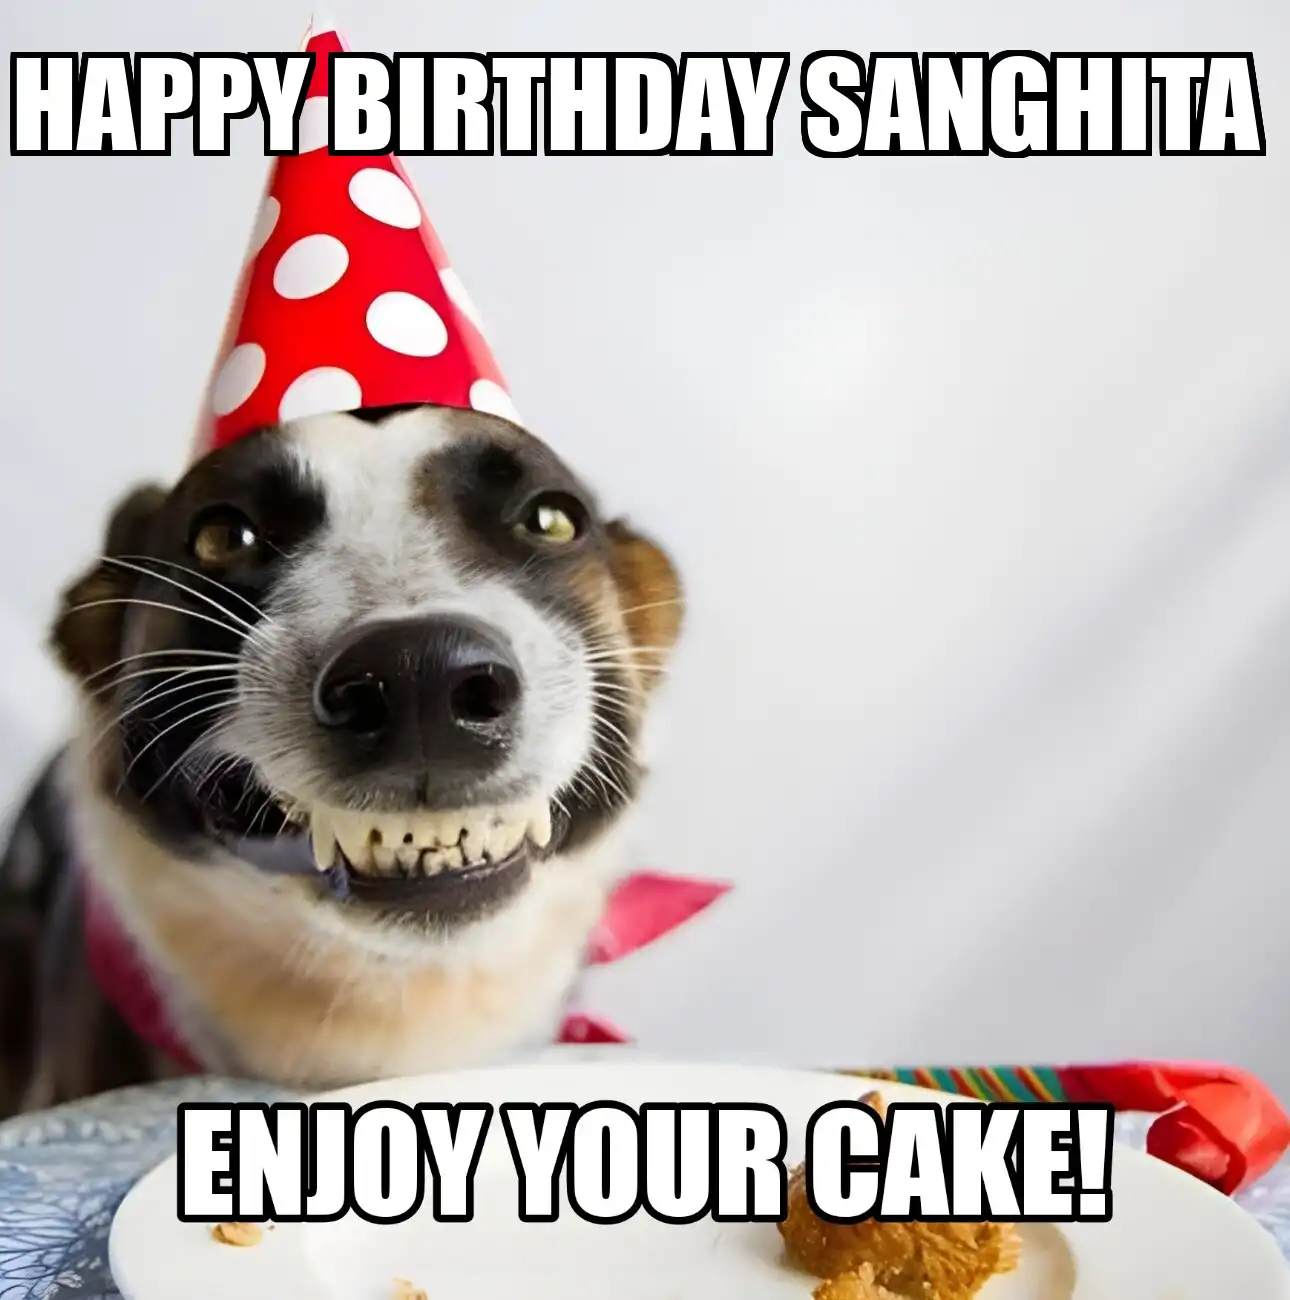 Happy Birthday Sanghita Enjoy Your Cake Dog Meme